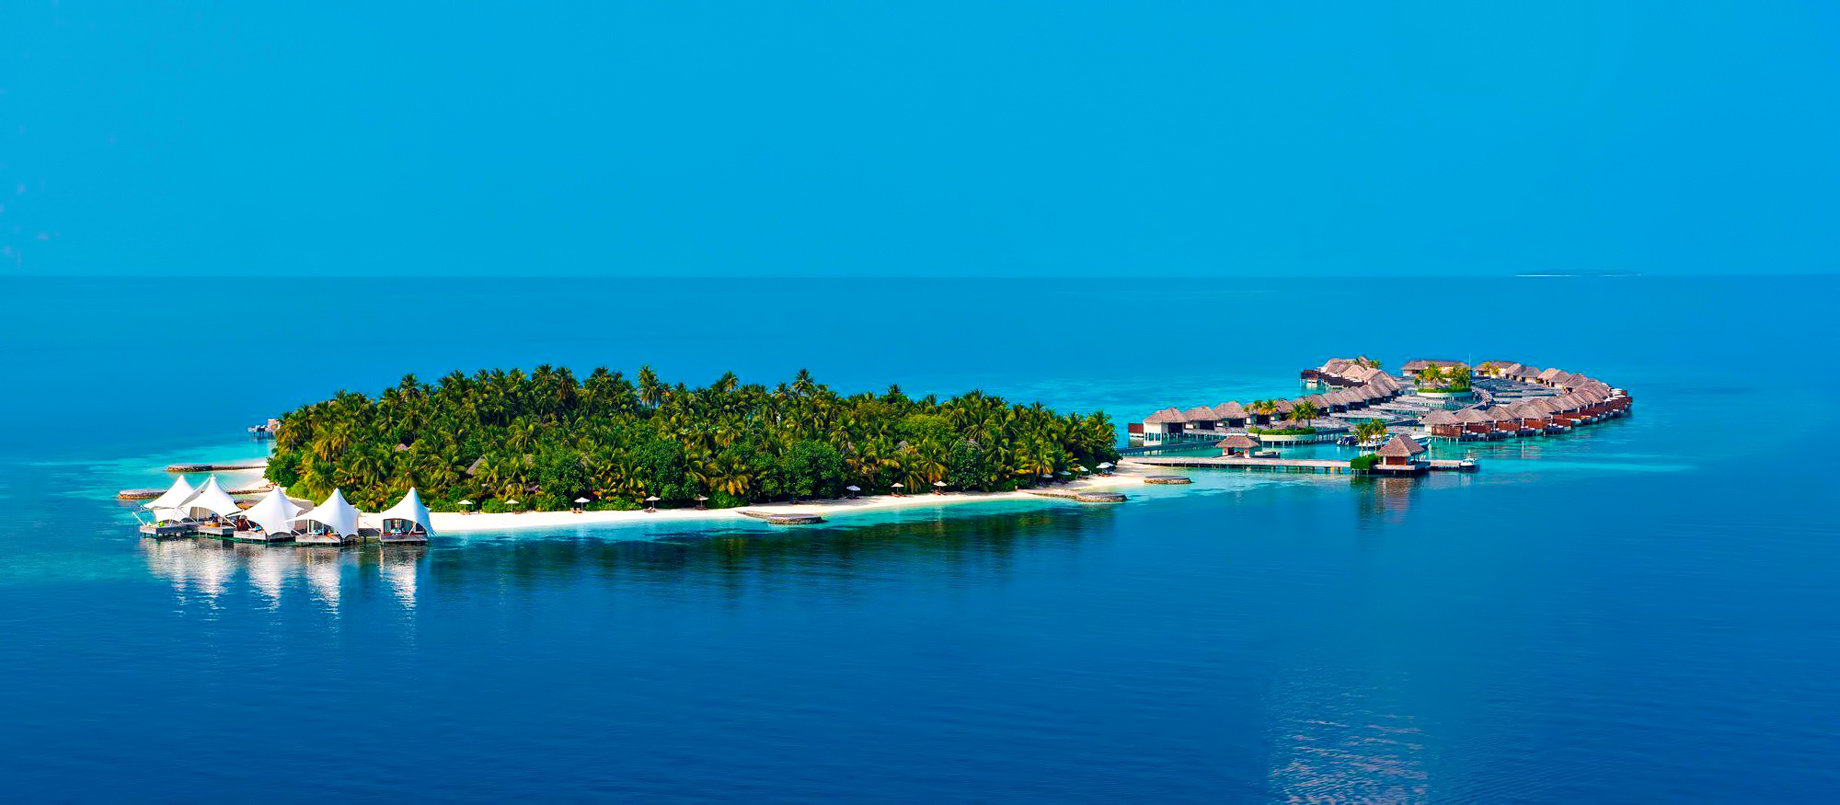 003 – W Maldives Resort – Fesdu Island, Maldives – Private Island Aerial View